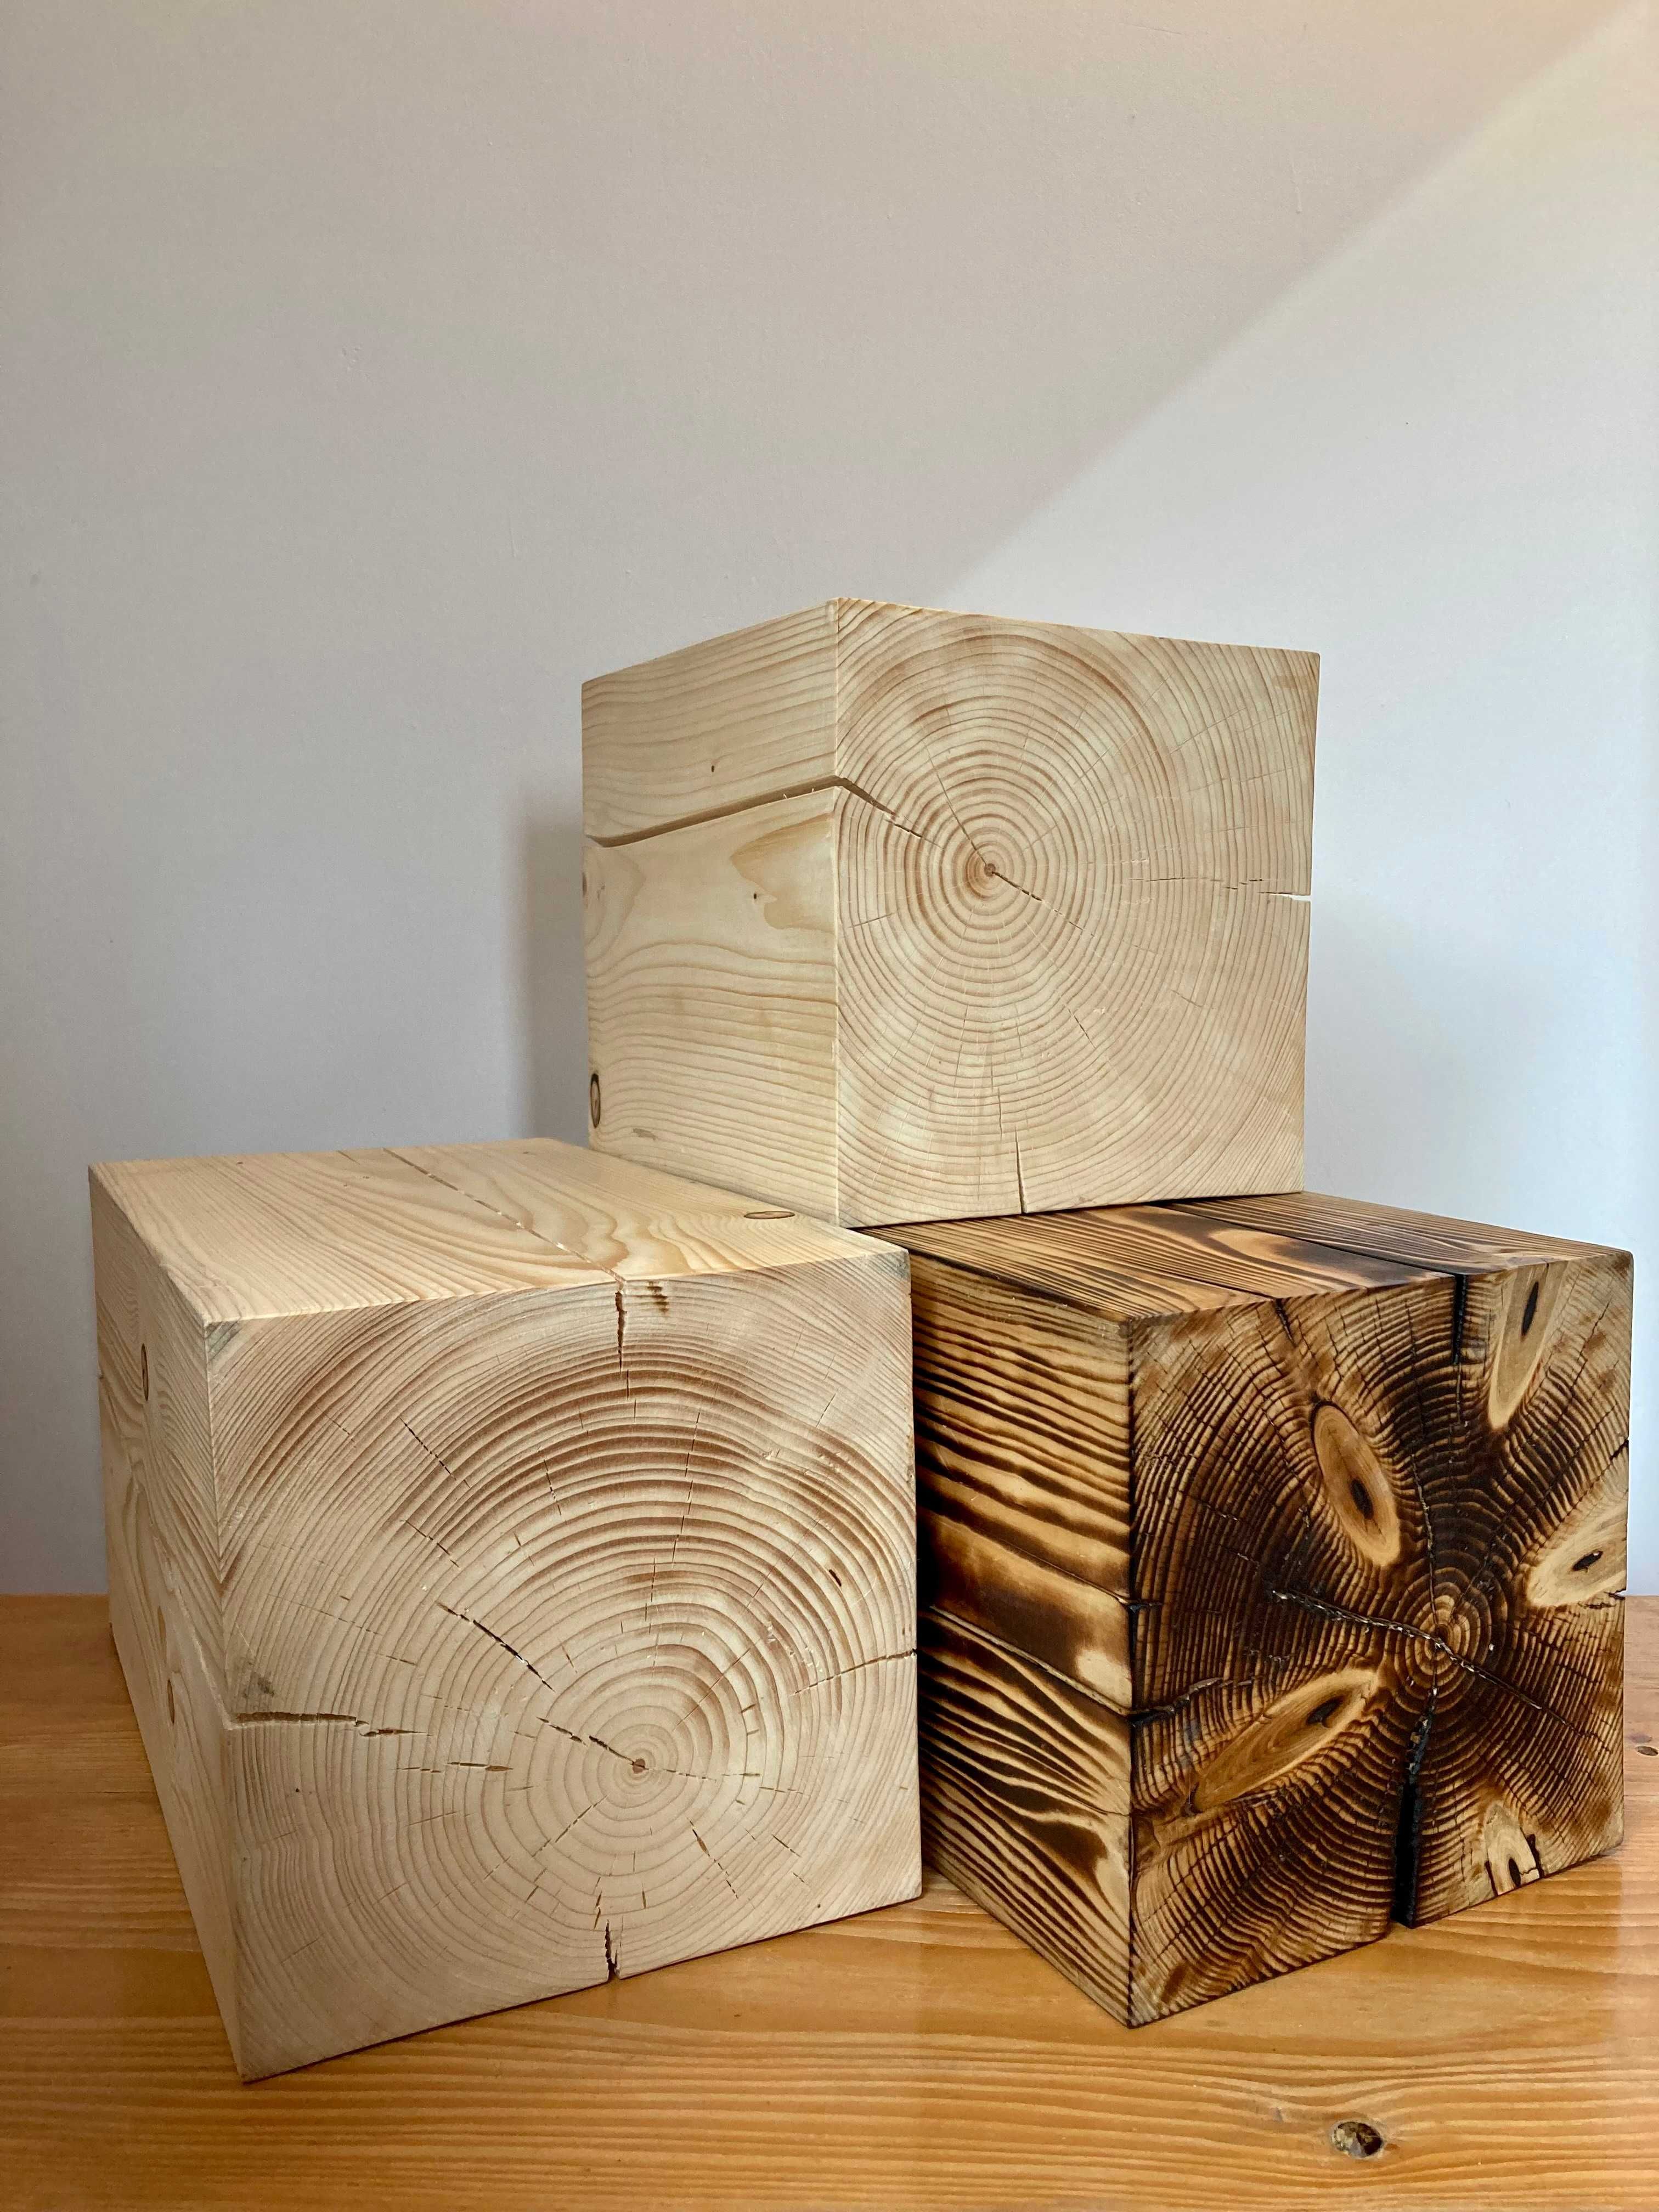 Dekoracyjny blok kostka drewniany pień kwietnik stojak stolik